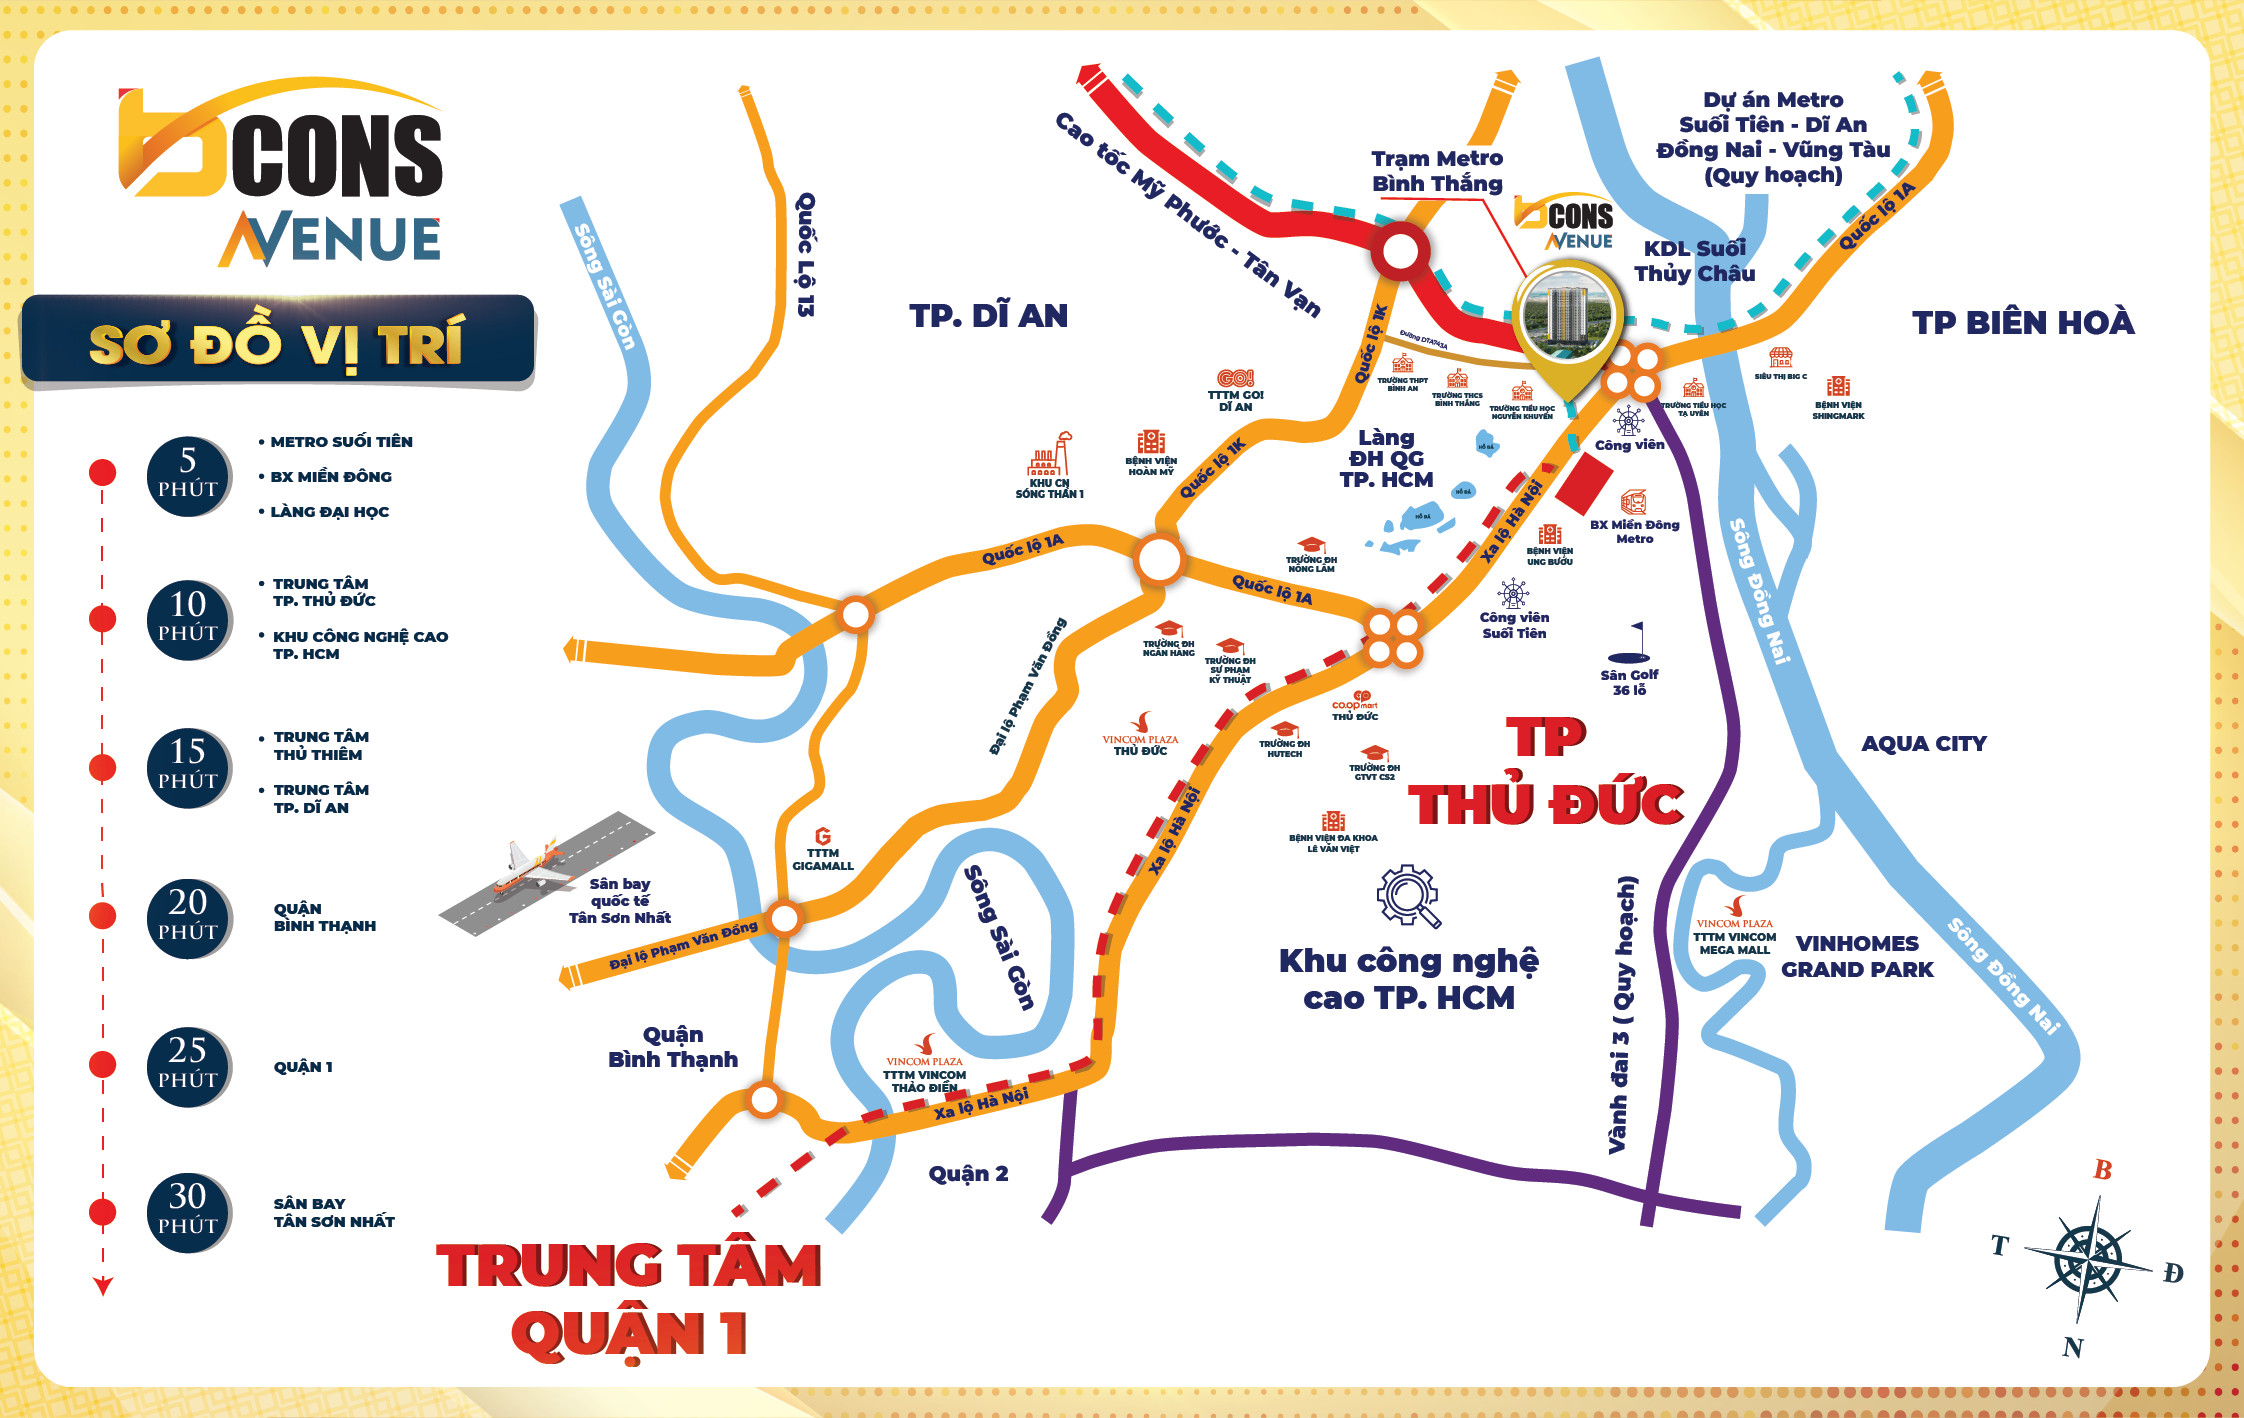 Bcons chính thức nhận Booking căn hộ mặt tiền Xa lộ Hà Nội, đối diện Ga Metro, gần Làng ĐH - Ảnh 1